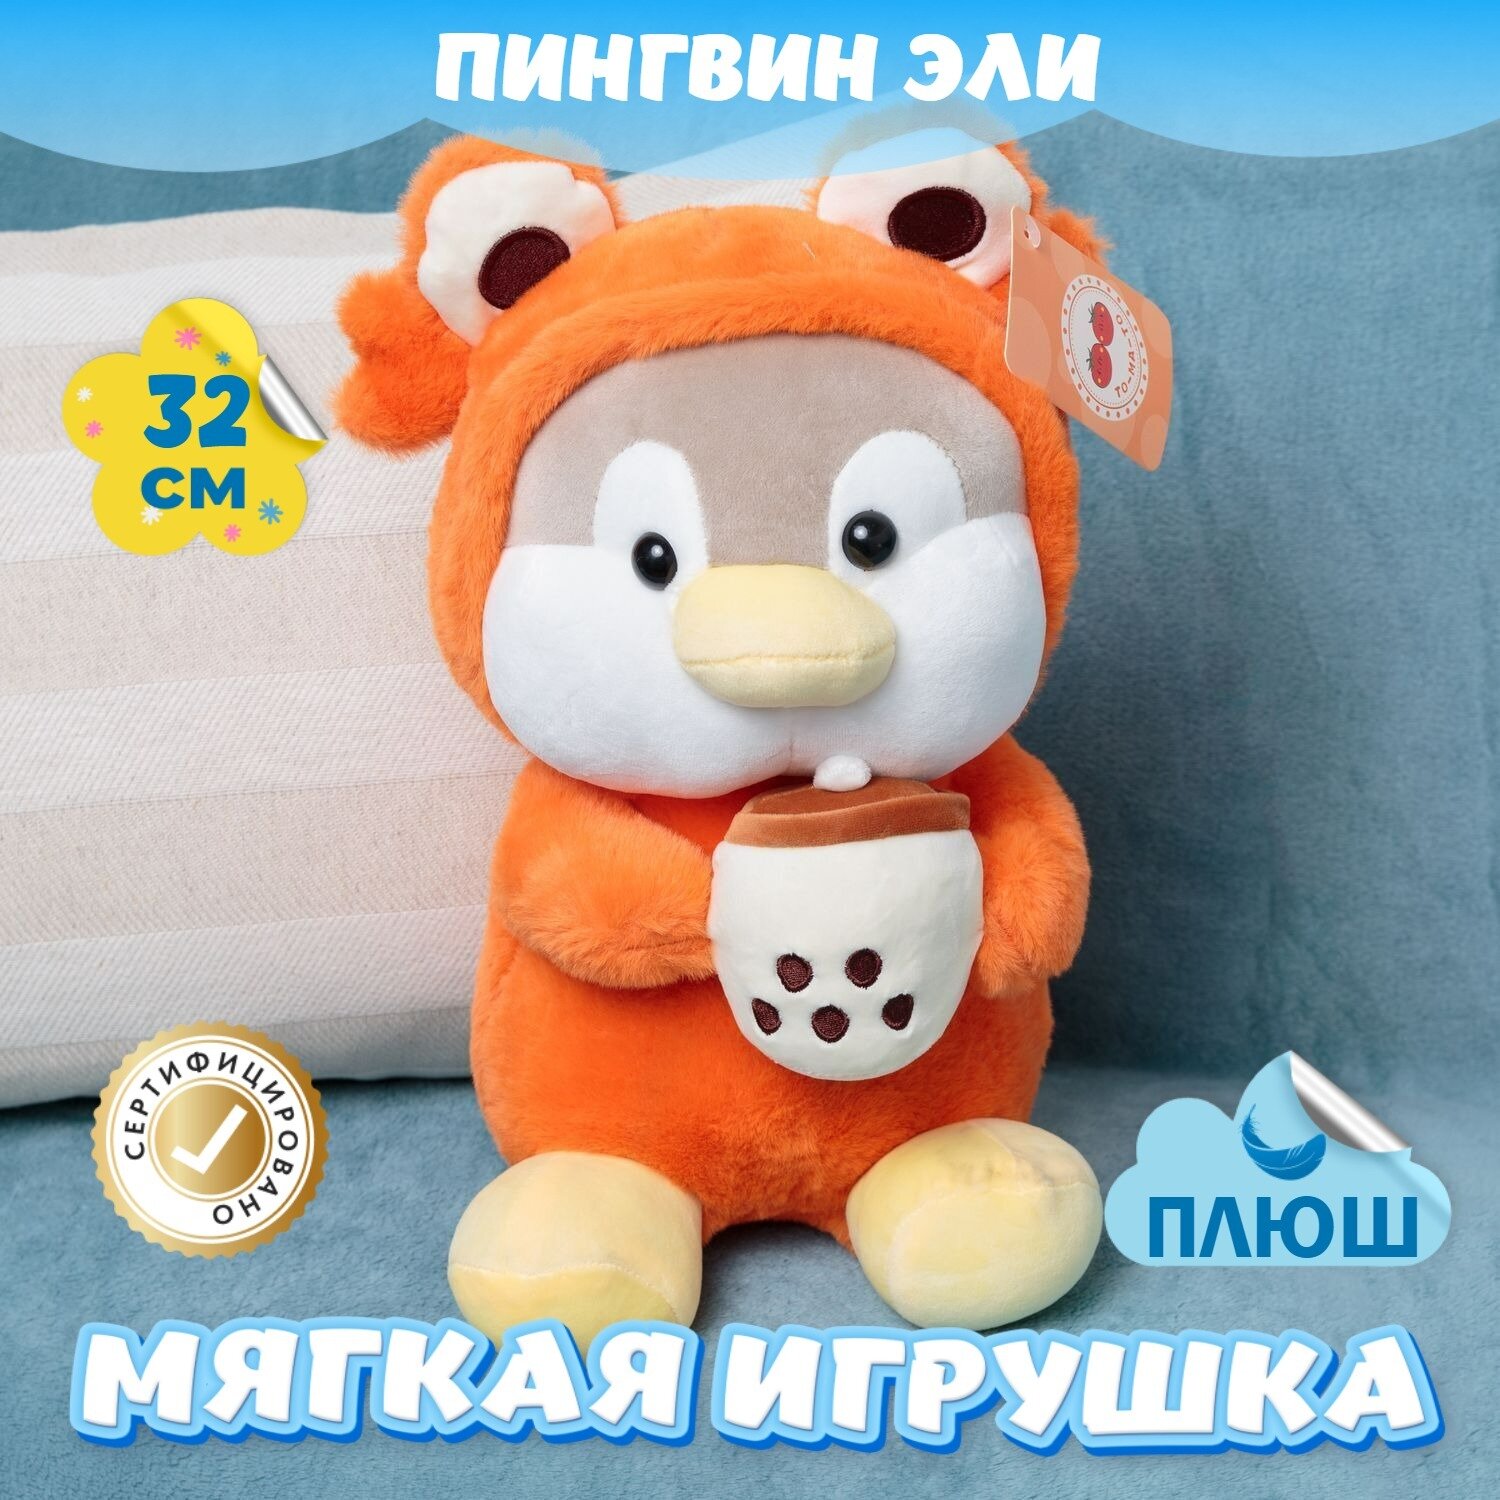 Мягкая игрушка Пингвин для девочек и мальчиков / Плюшевый Пингвиненок для детей KiDWoW оранжевый 32см